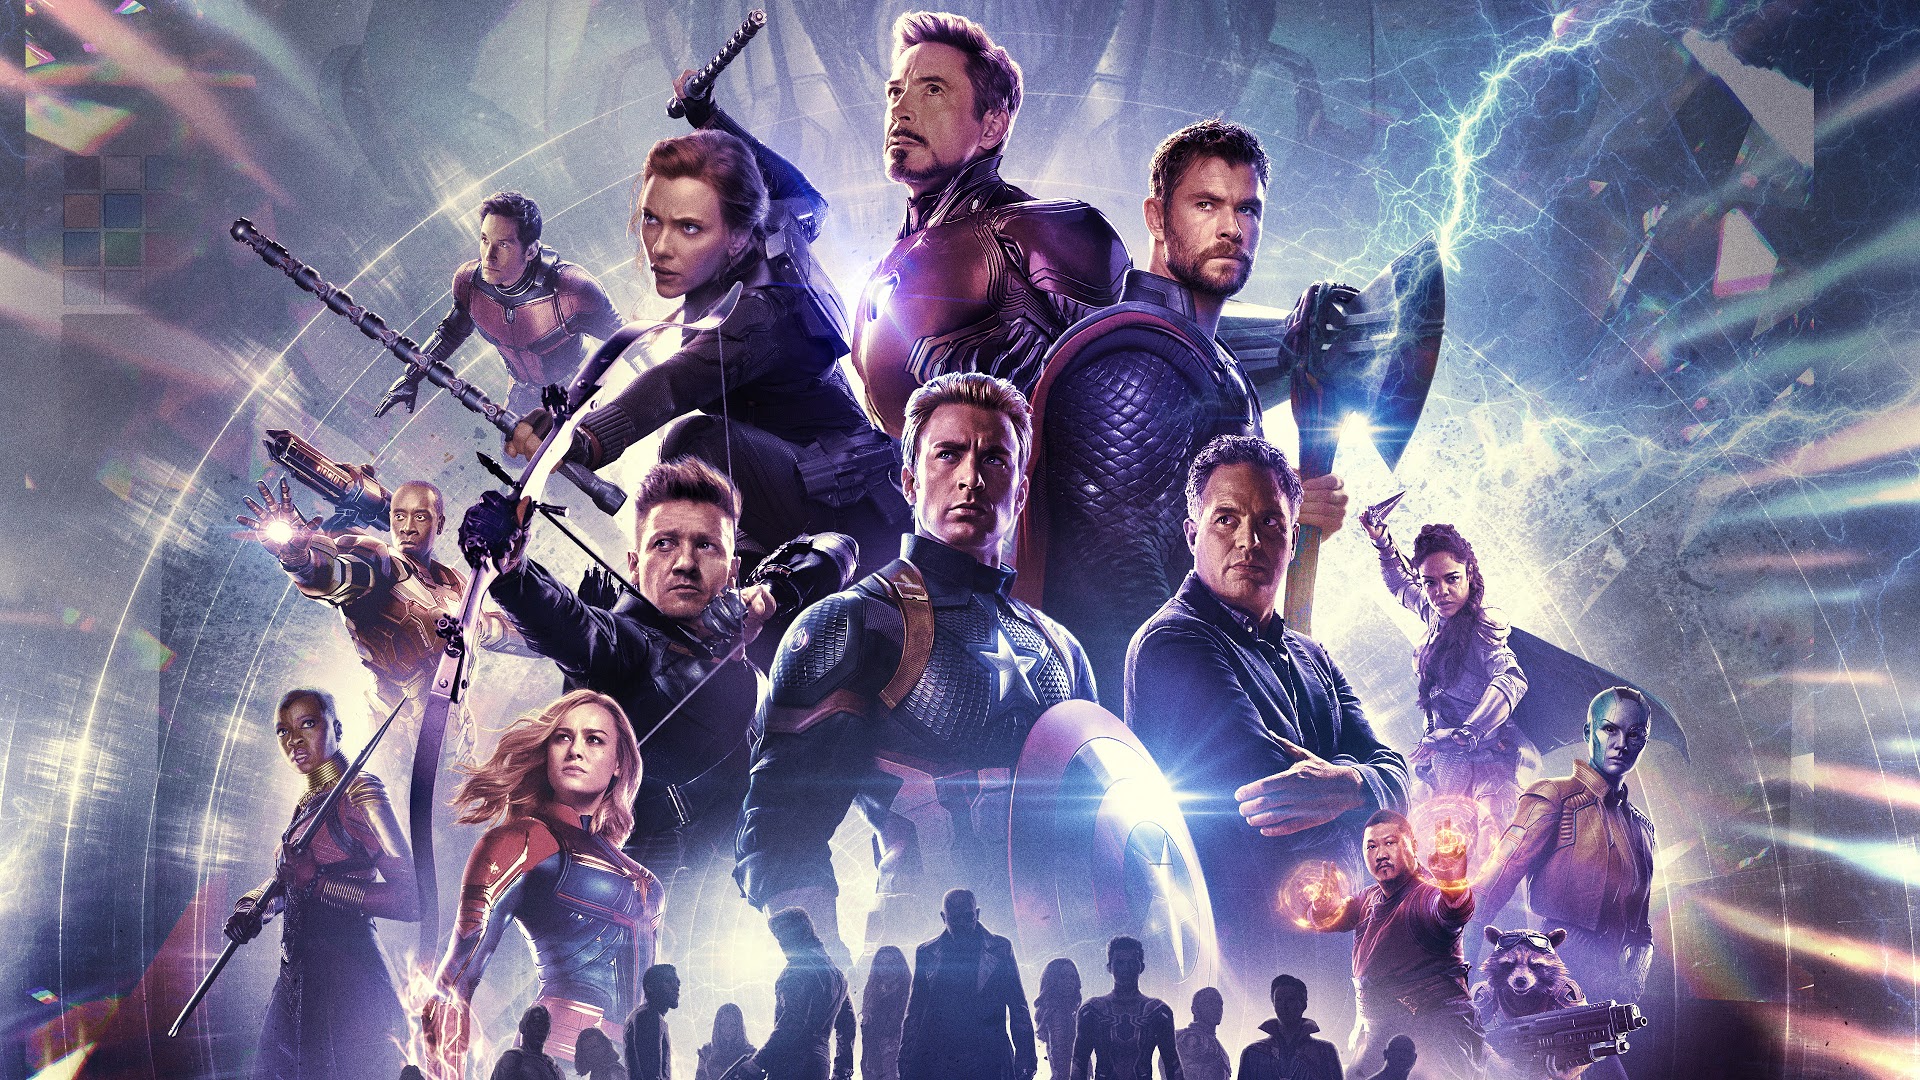 Endgame, Characters, 4k, - Avengers Endgame Wallpaper 4k - HD Wallpaper 